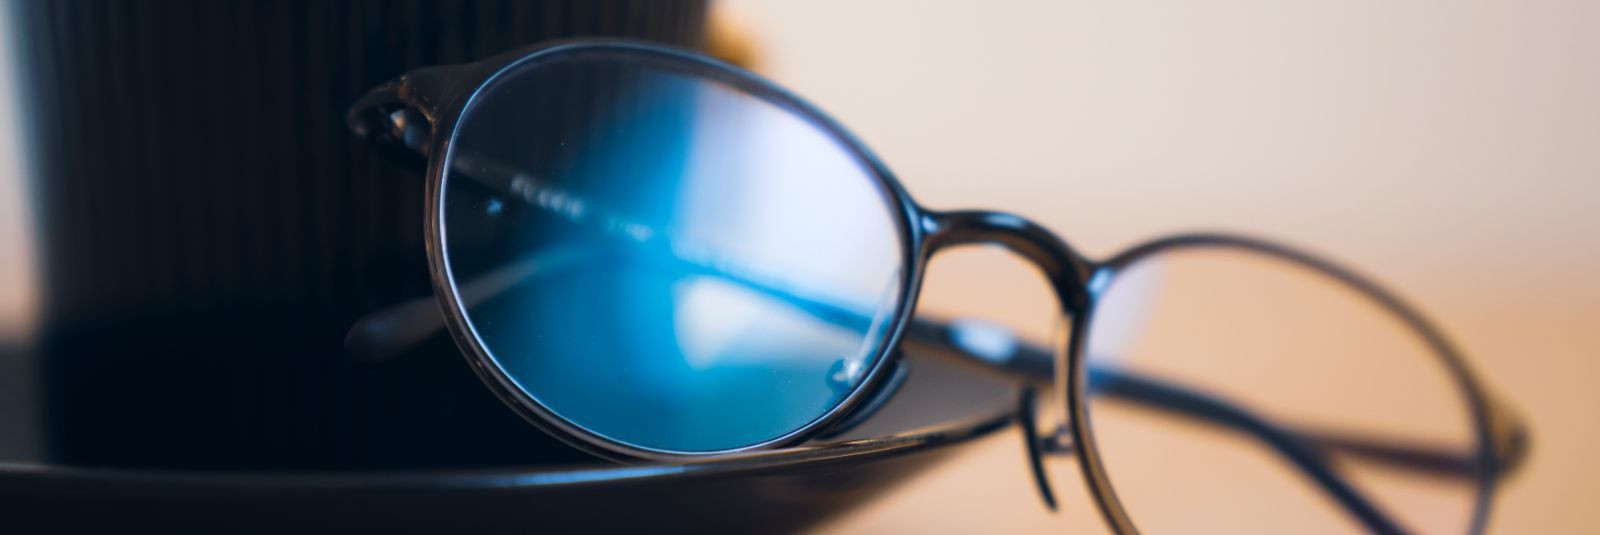 Kaitse oma silmi, naudi mugavust ja tee tervisele head!  sinisevalguseprillid.ee  e-pood pakub sinise valguse prille, mis on disainitud sinu heaolu silmas pidad